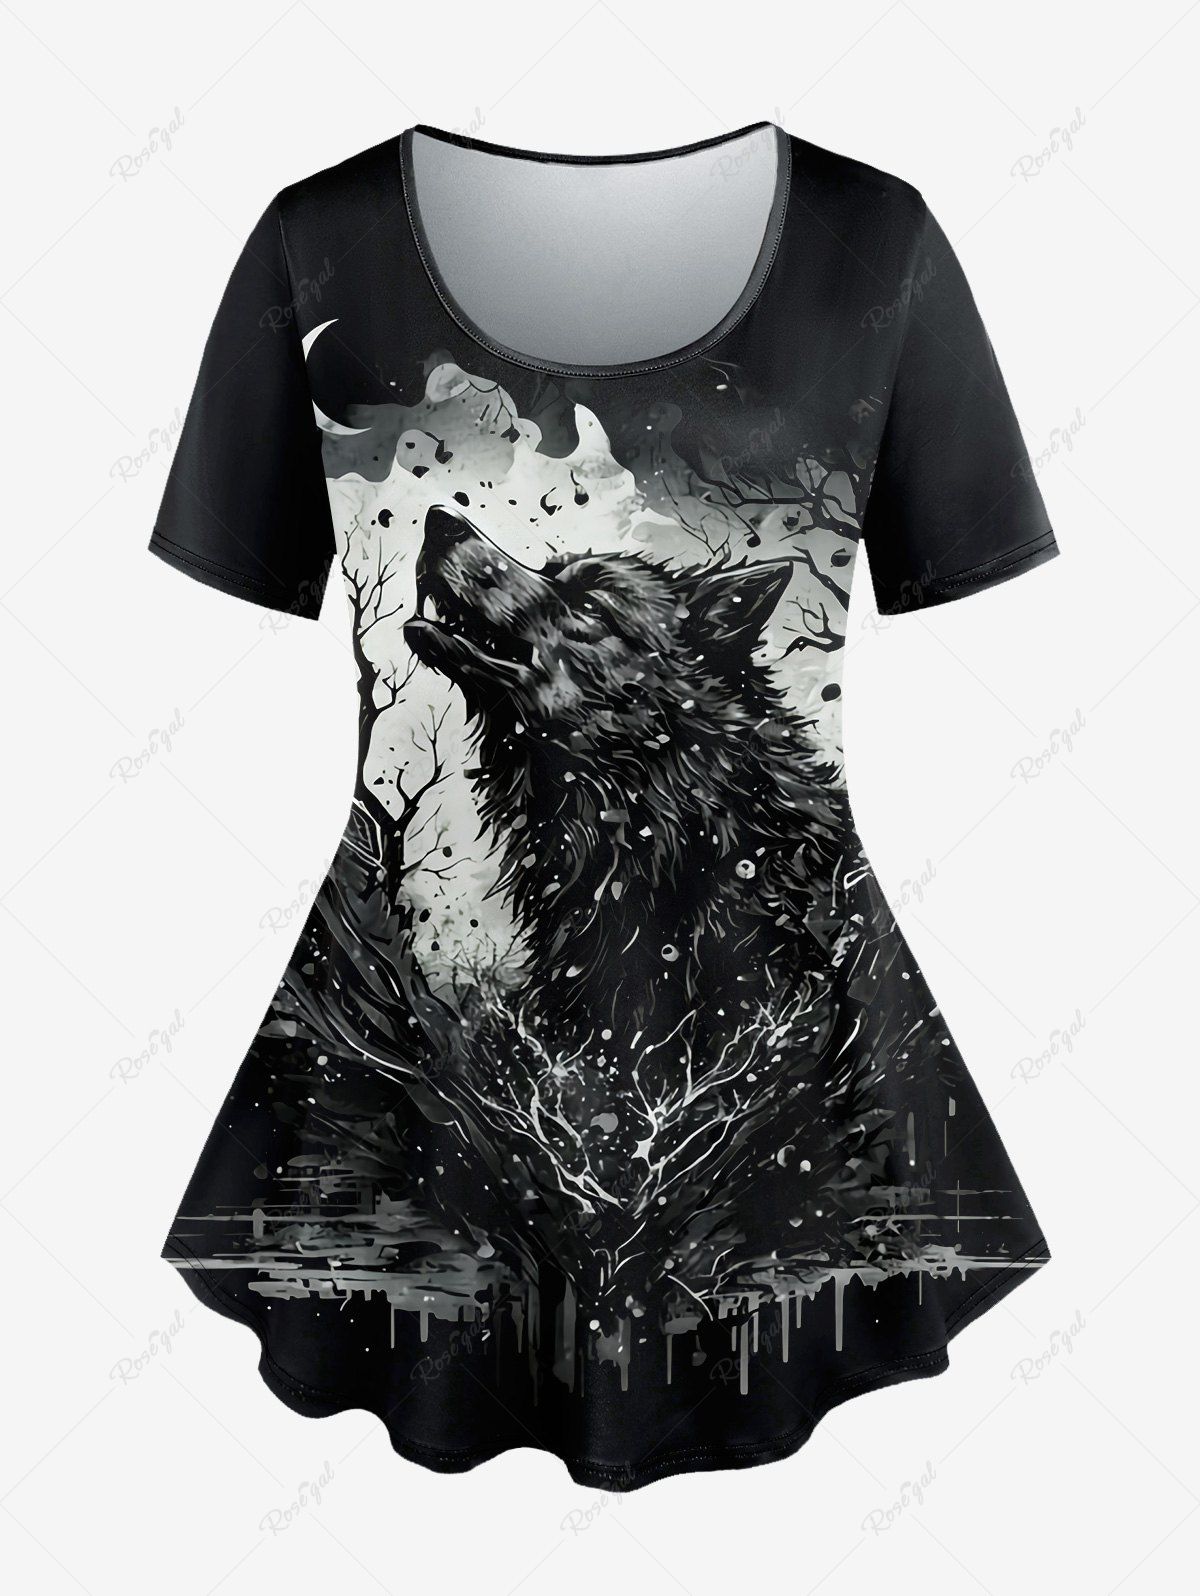 T-shirt Gothique Peinture Eclaboussée Loup et Lune Imprimés à Manches Courtes Noir L